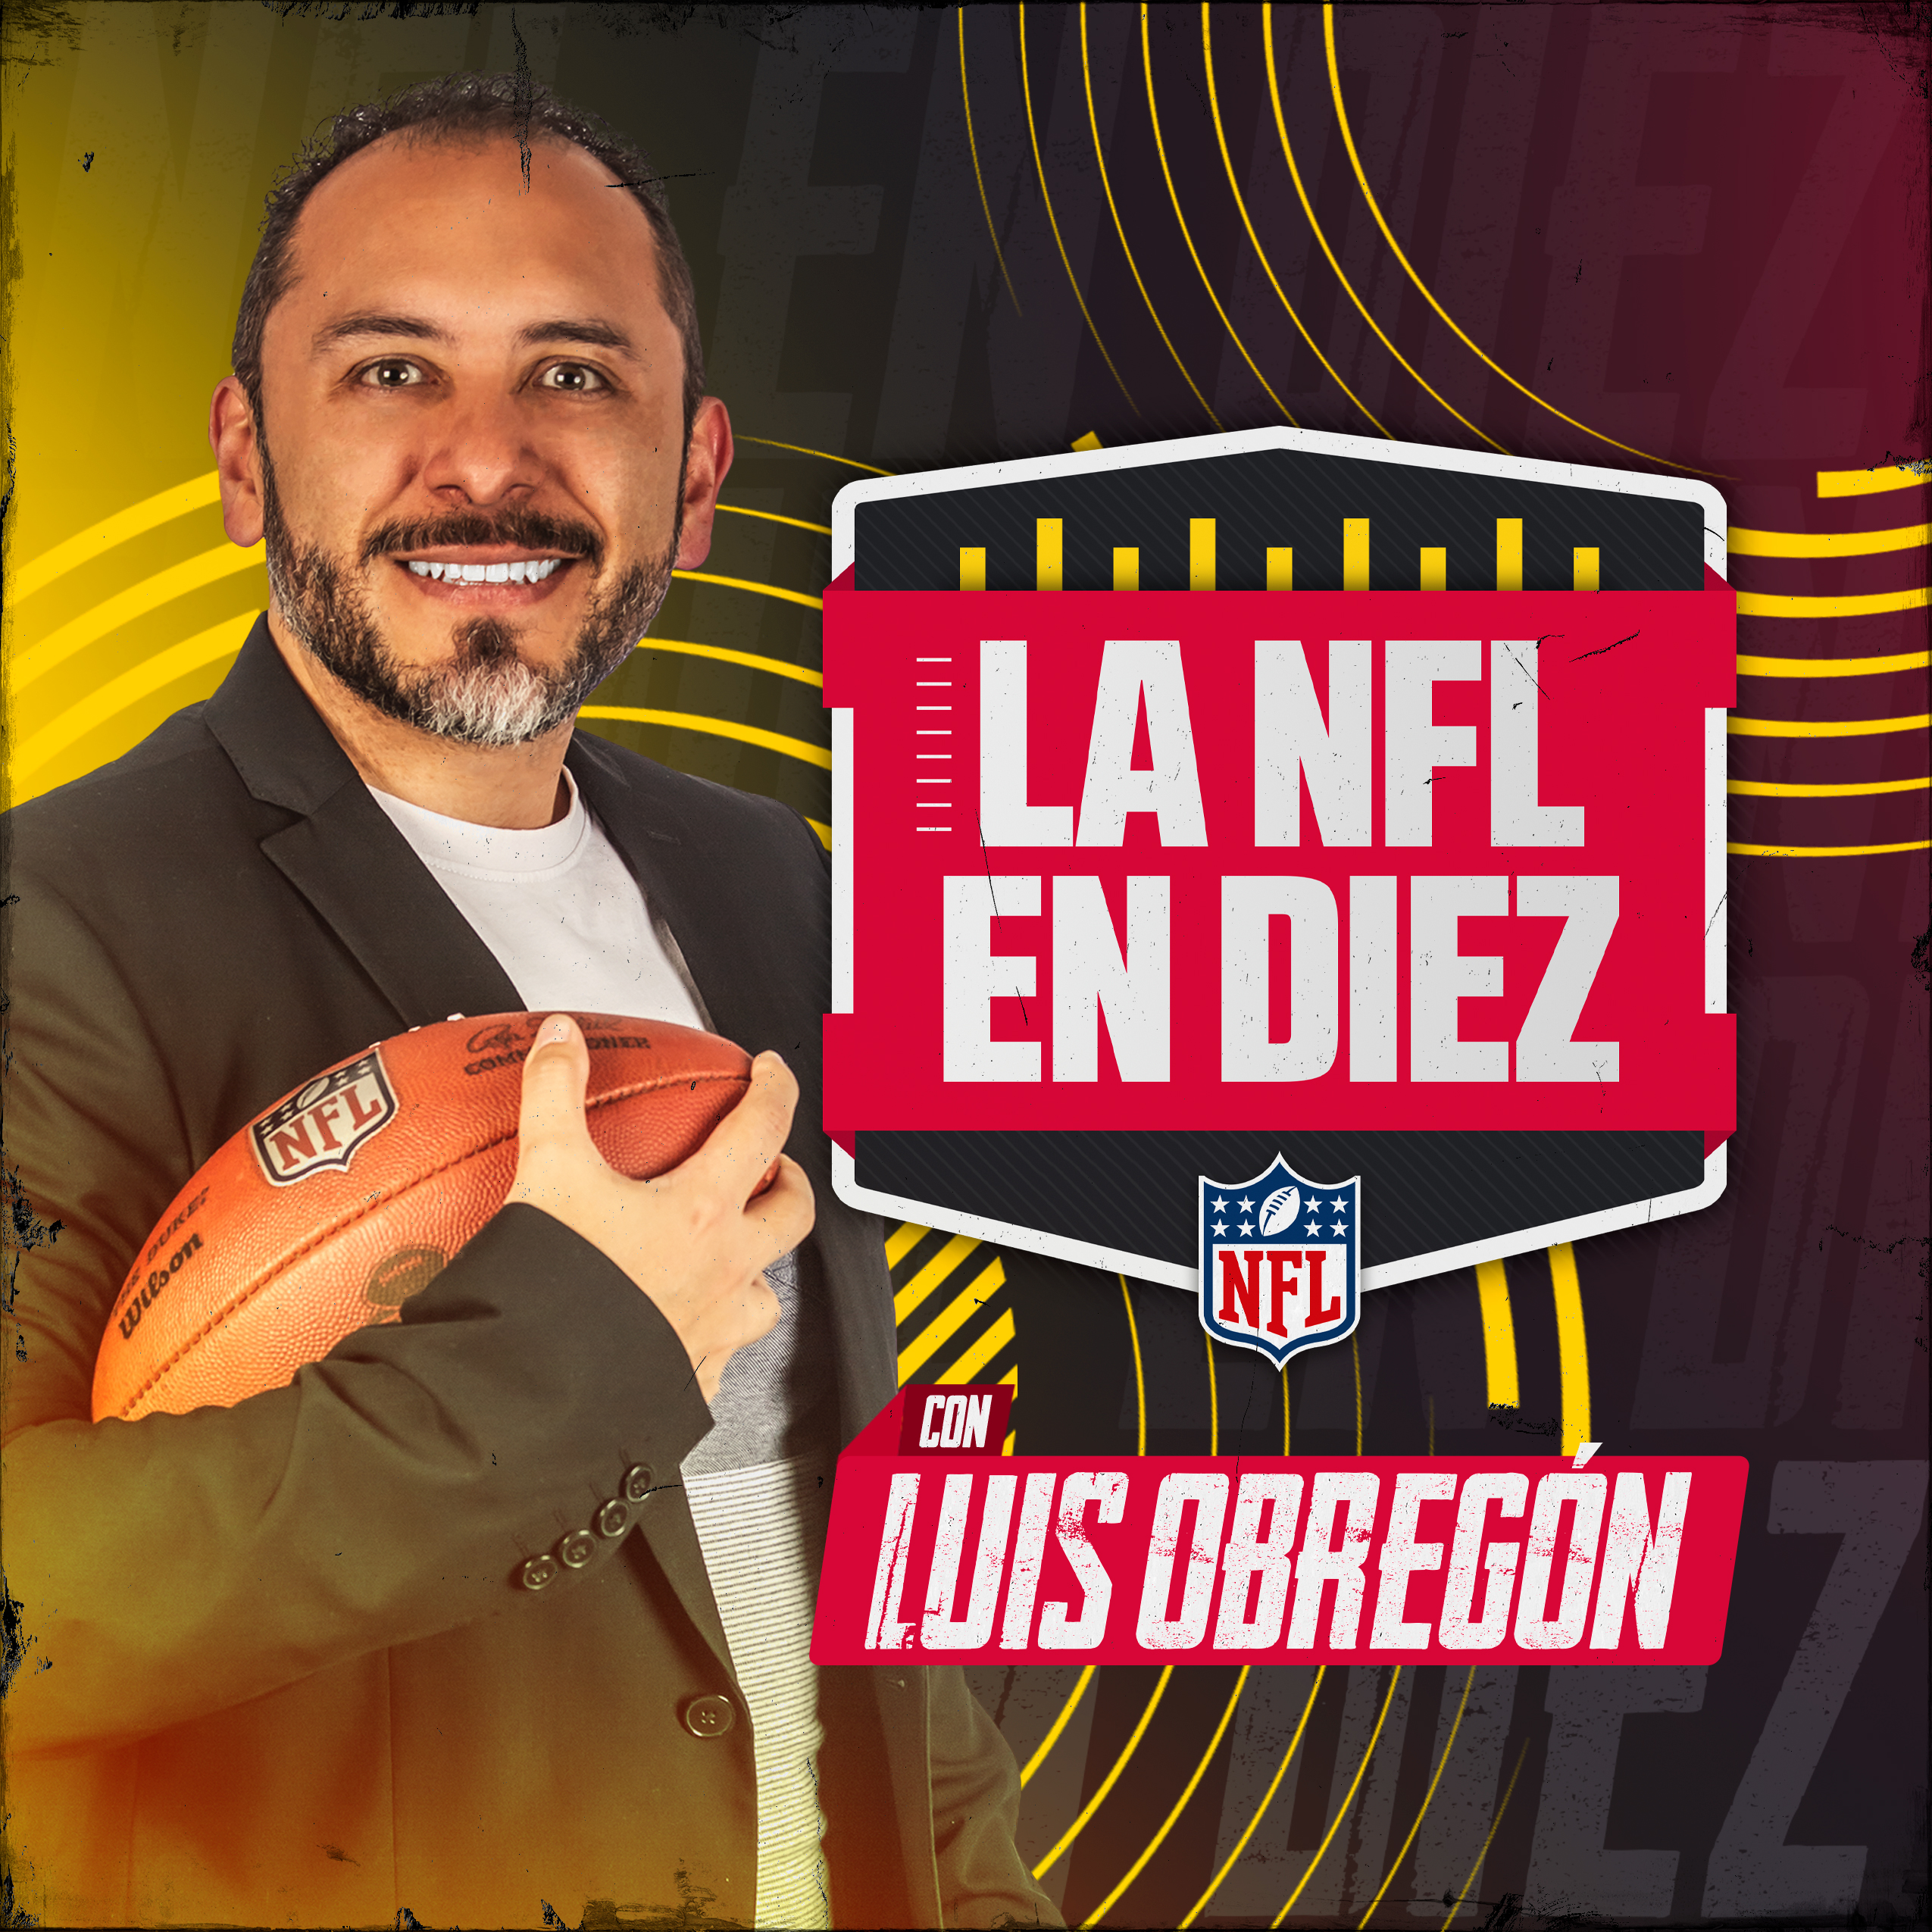 Imagen de Juegos de NFL en Brasil y España | Noticias en la semana del Super Bowl LVIII con Pablo Viruega y Ricardo Lopez